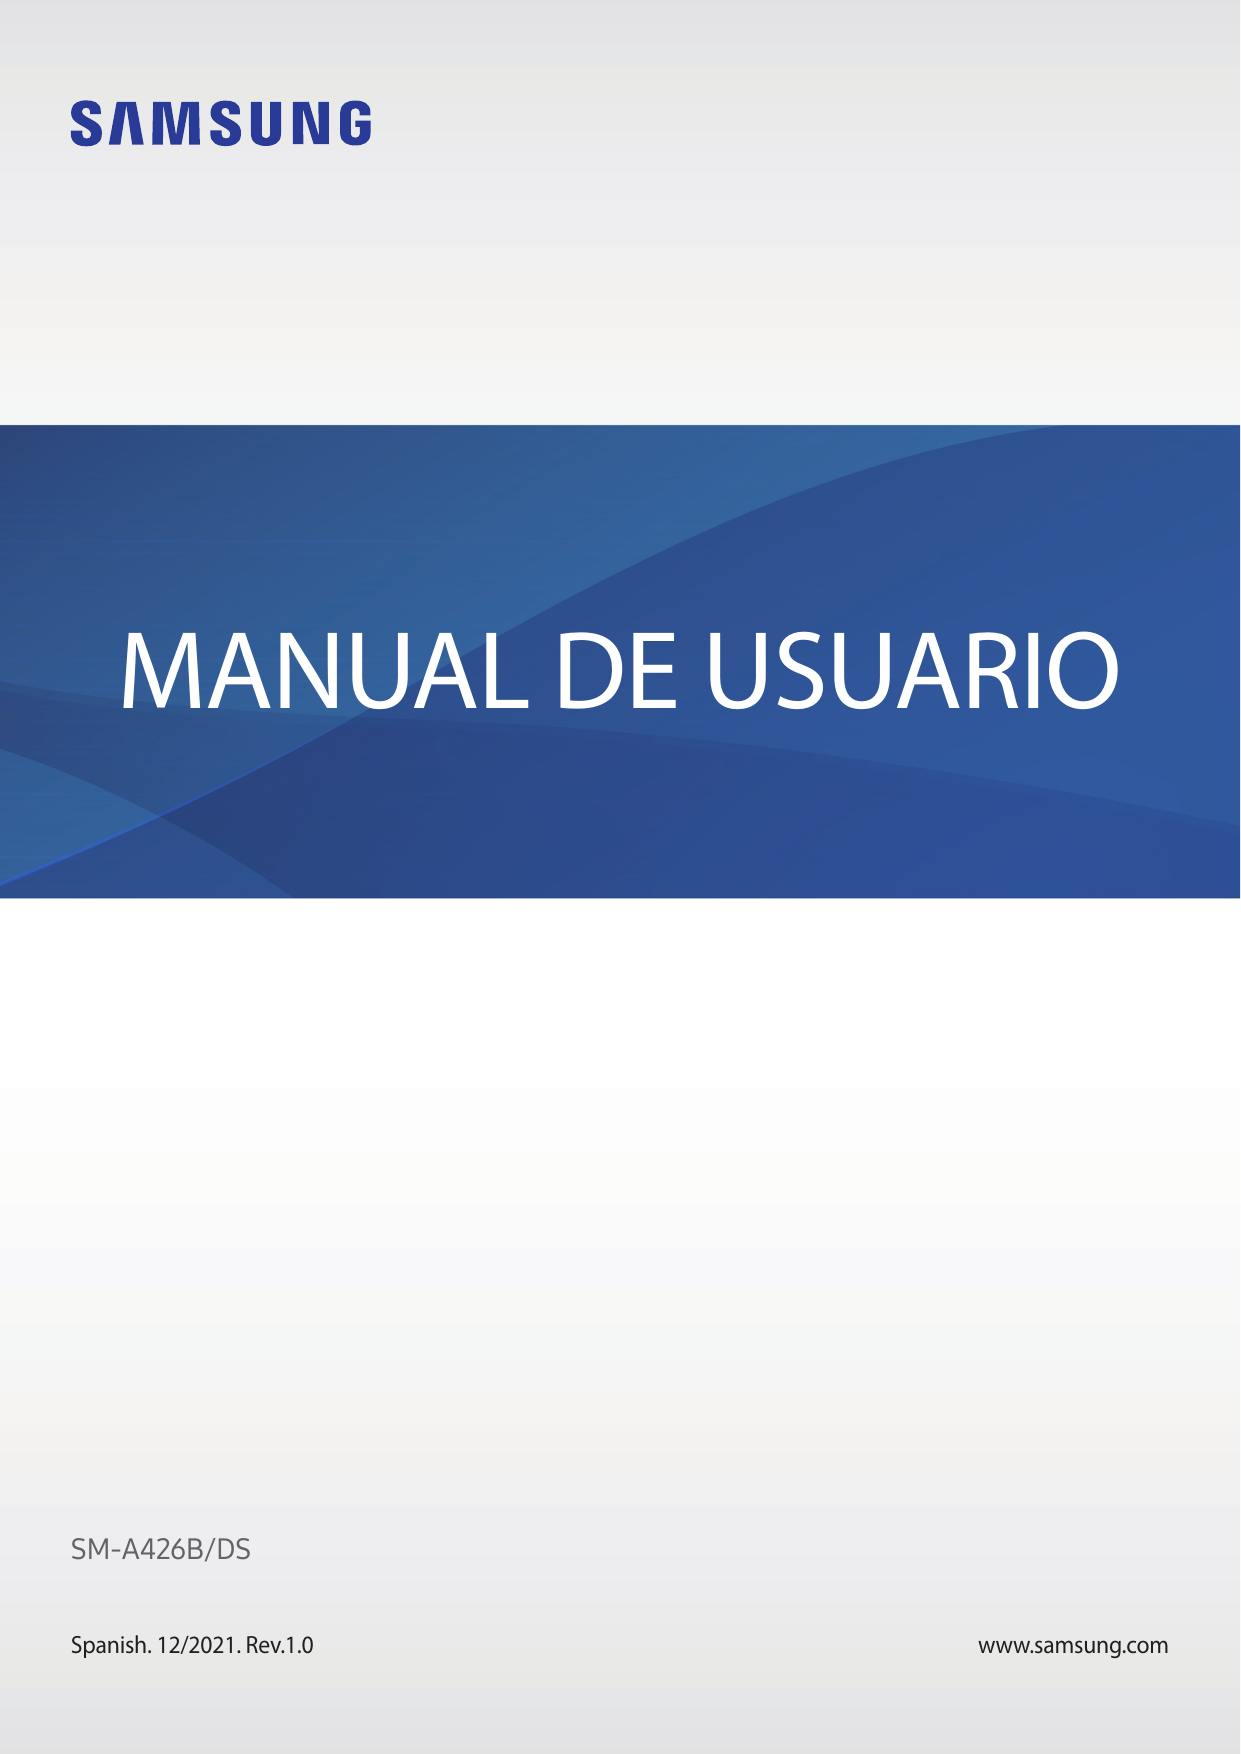 MANUAL DE USUARIOSM-A426B/DSSpanish. 12/2021. Rev.1.0www.samsung.com